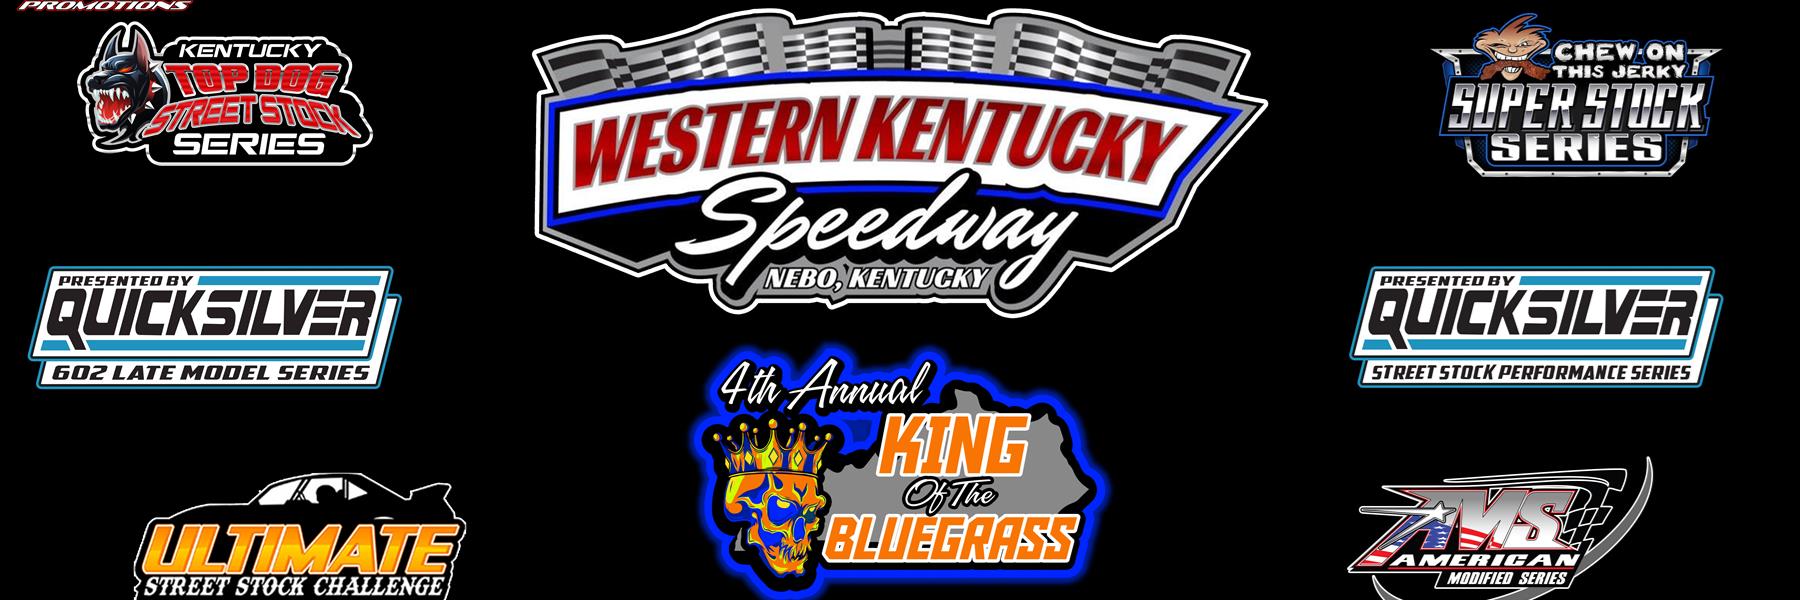 9/10/2022 - Western Kentucky Speedway